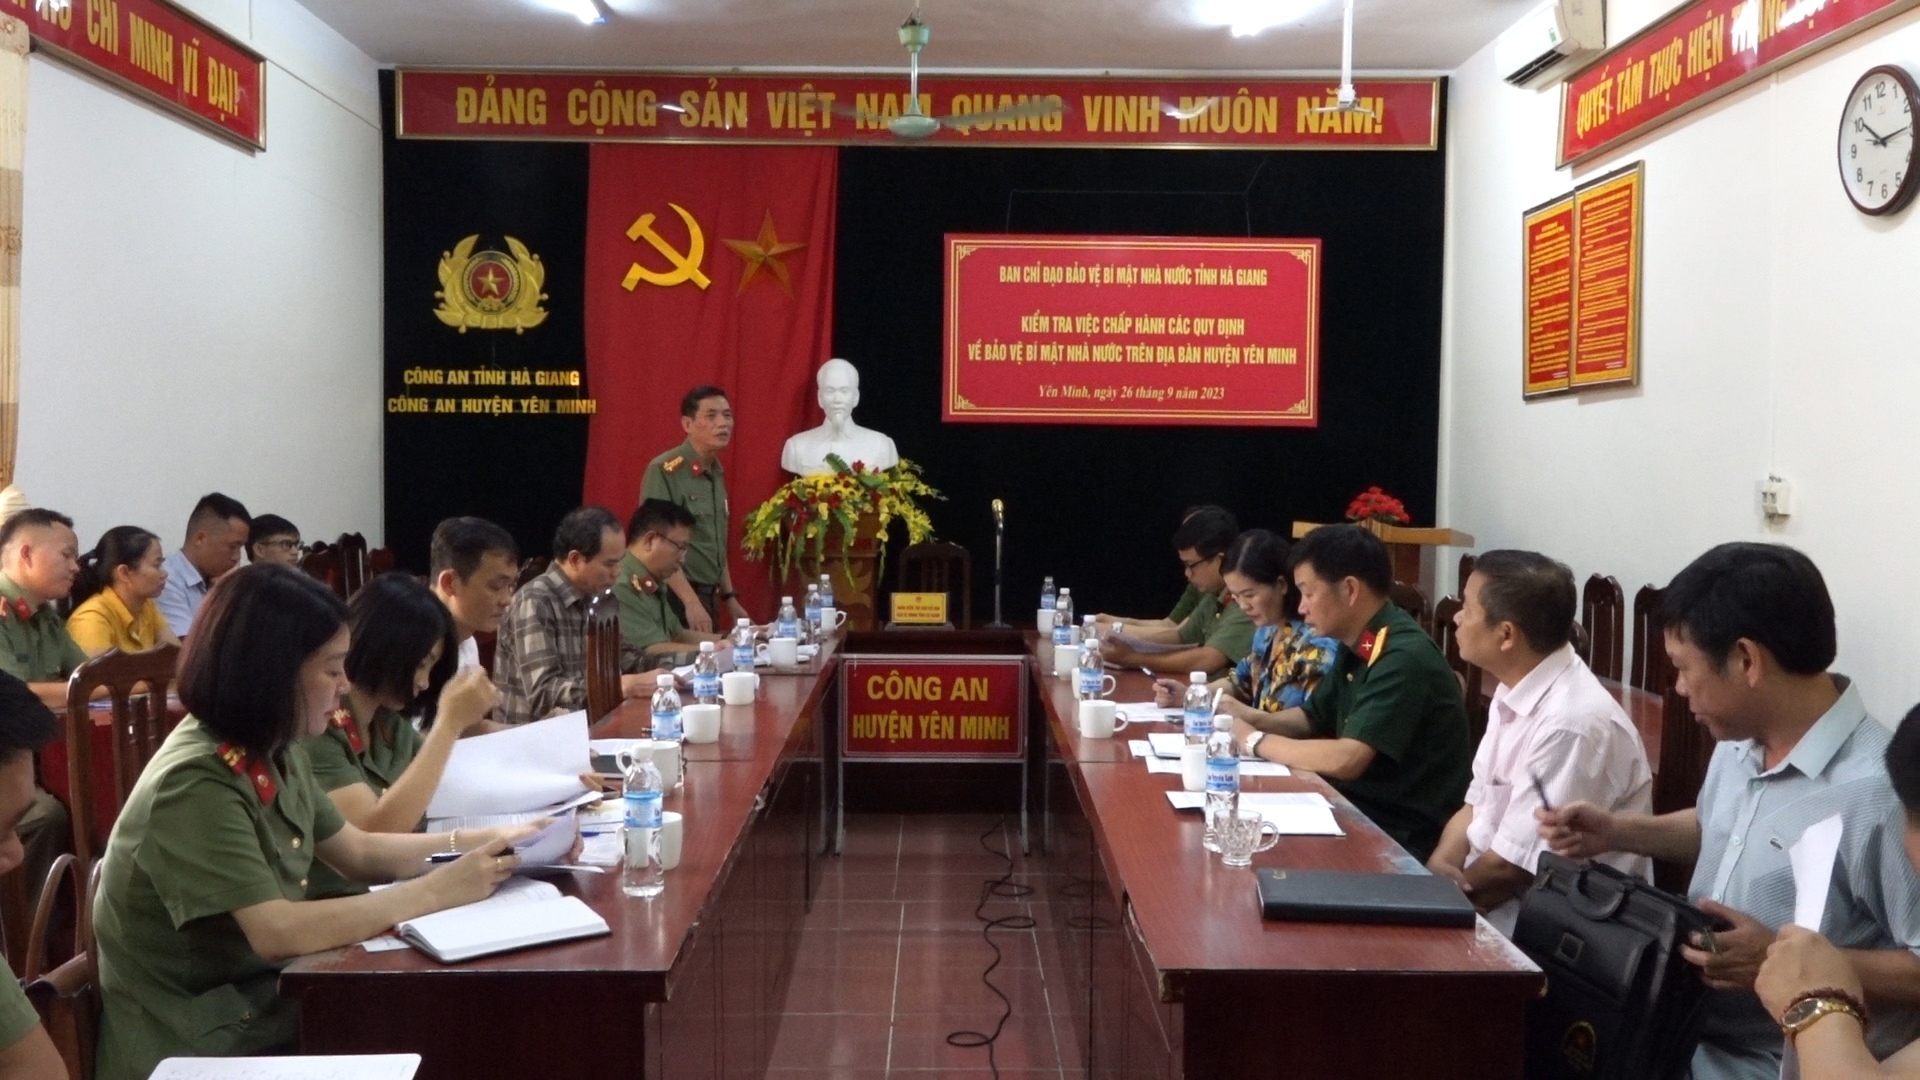 Đoàn công tác Ban Chỉ đạo Bảo vệ bí mật nhà nước tỉnh Hà Giang kiểm tra việc chấp hành các quy định về bảo vệ bí mật nhà nước tại huyện Yên Minh